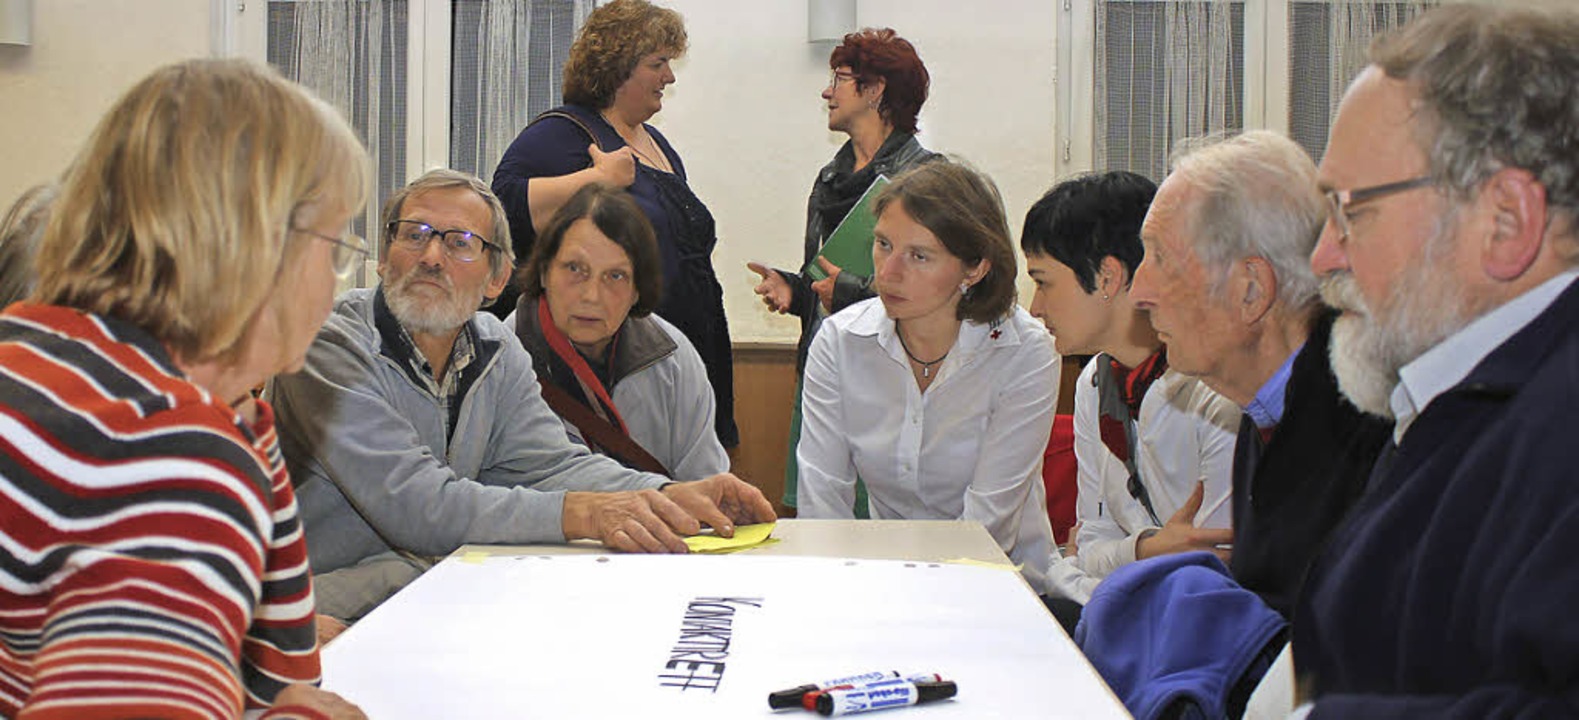 Ehrenamtliche Helfer besprechen ihre Arbeit.   | Foto: Ute Kienzler